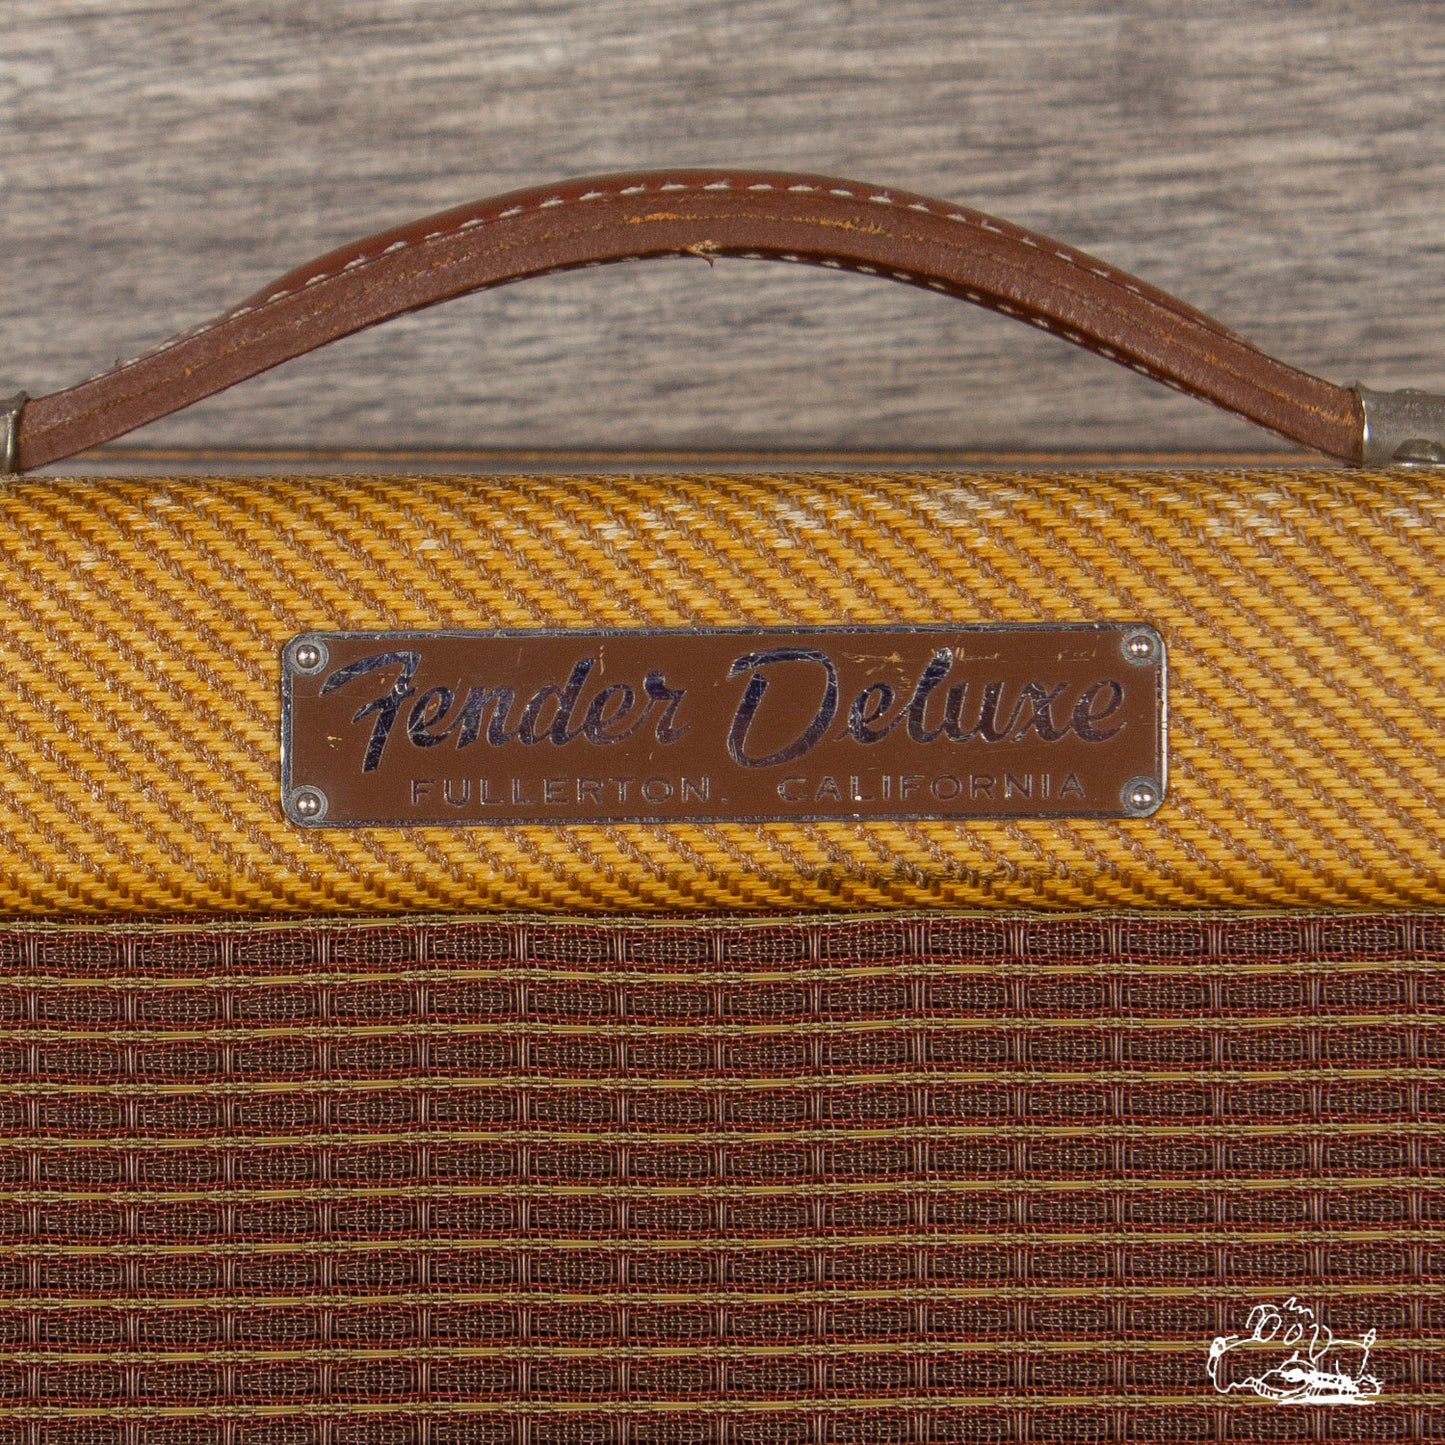 1959 Fender Deluxe Amplifier